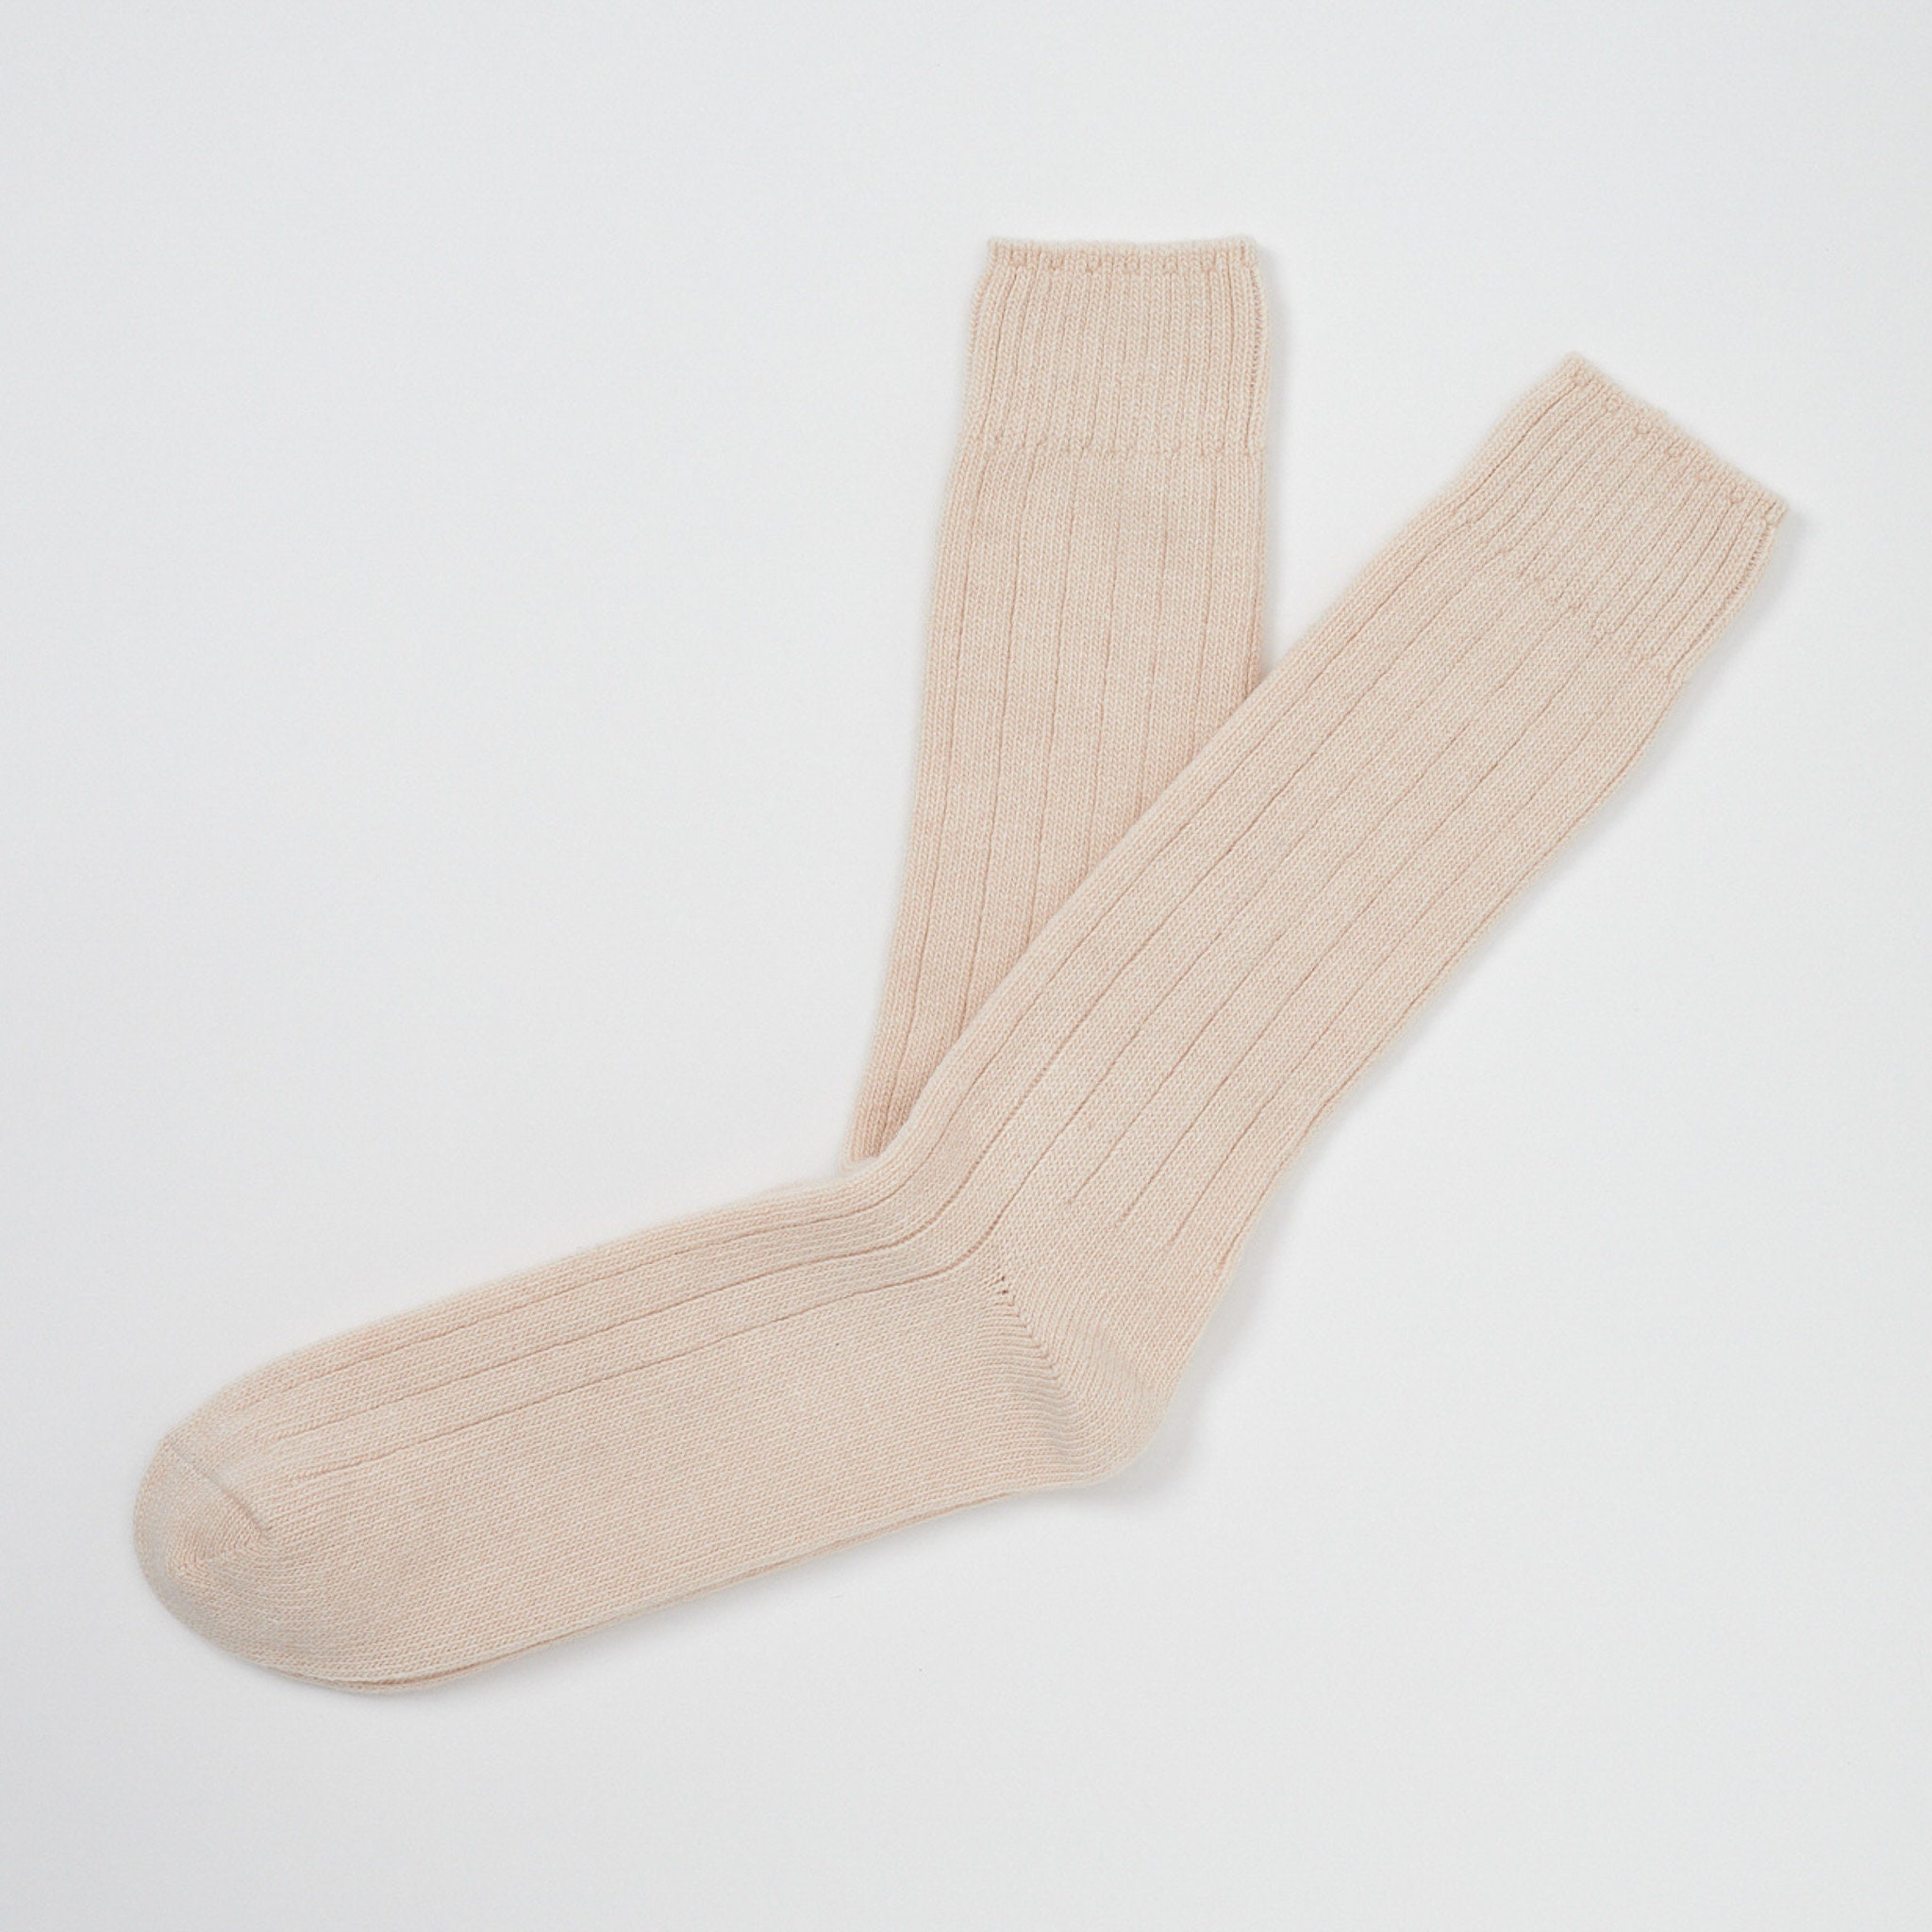 Cashmere Blend Socks - Ecru Size L = Uk 8-12 | Eur 41-47/Us 8.5- 12